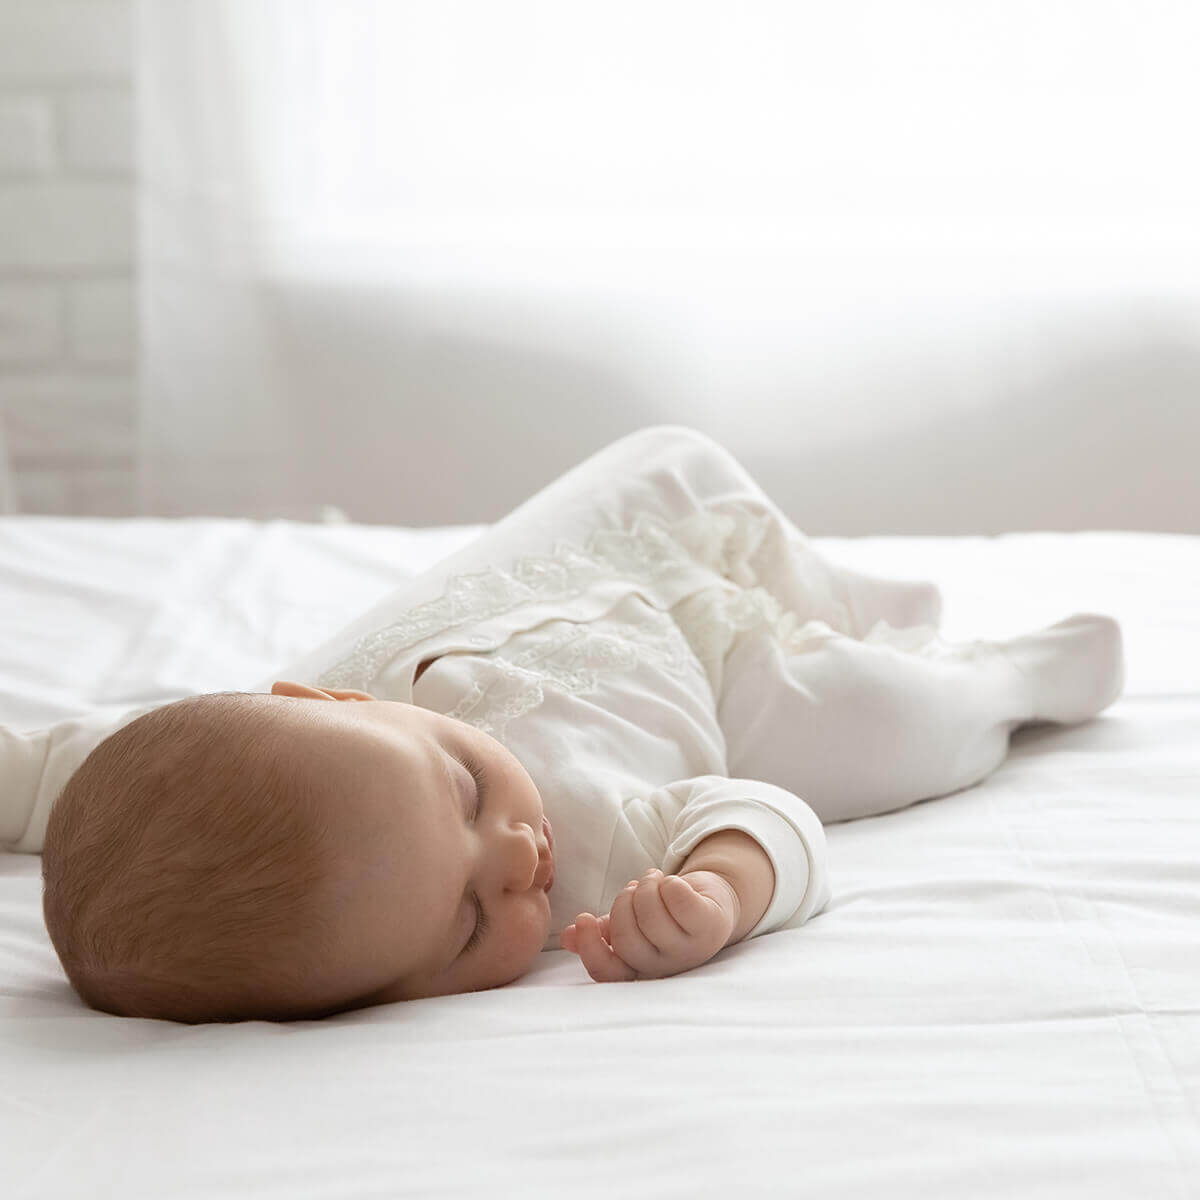 ein baby Schläft gemütlich auf einer Matratze